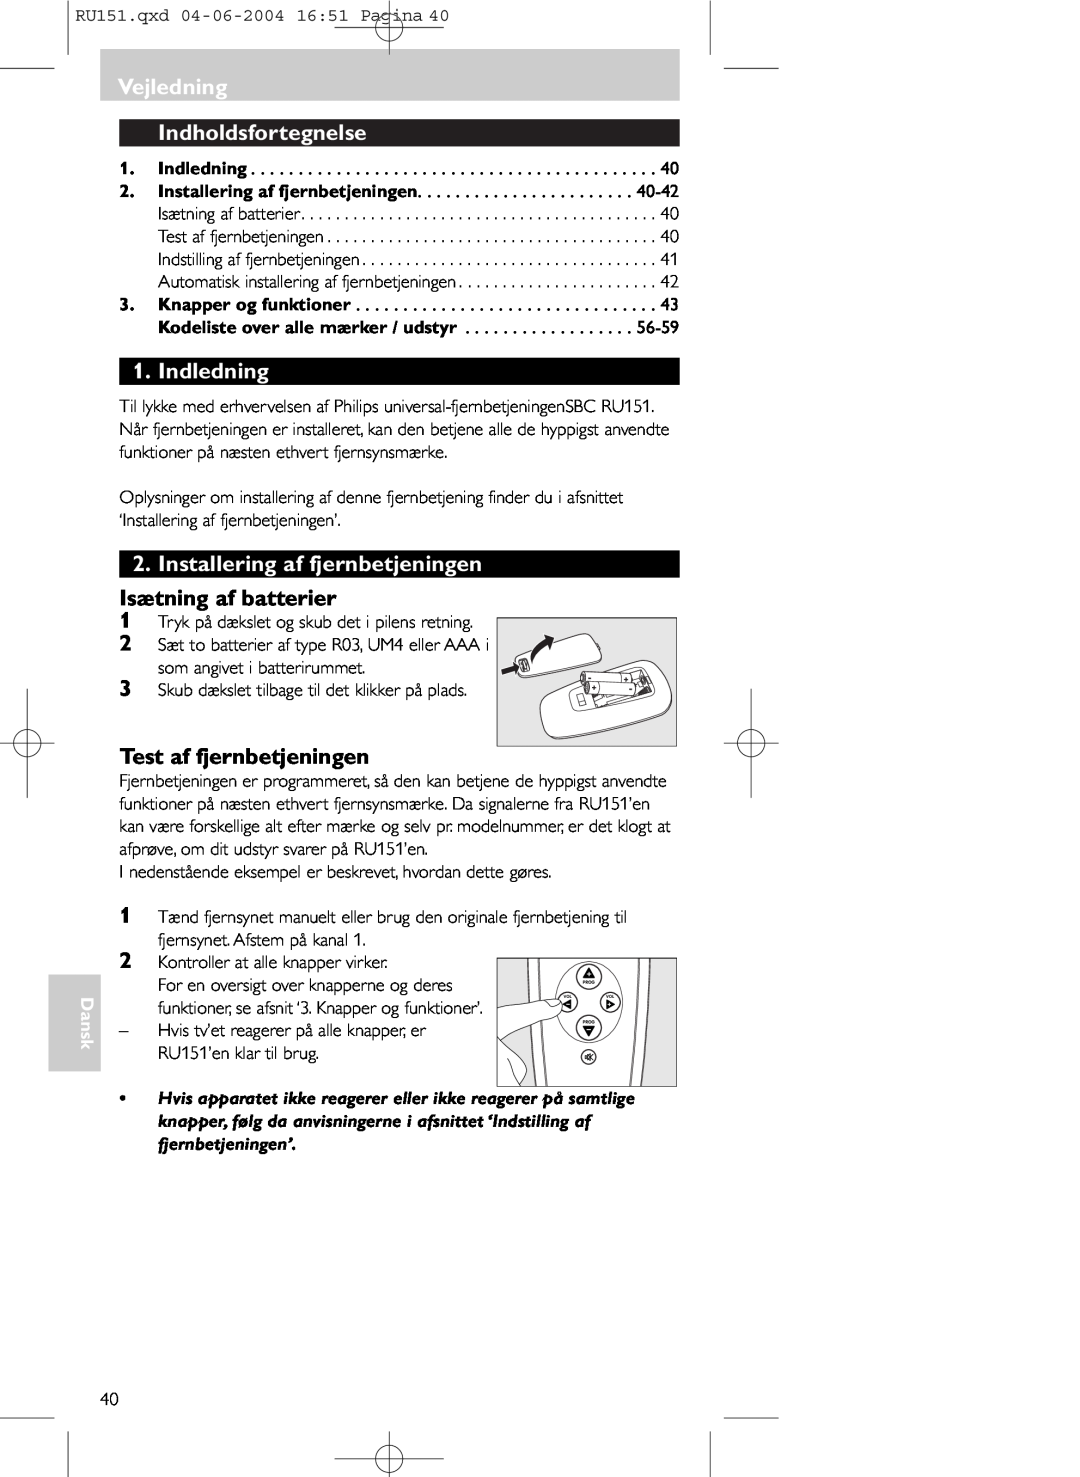 Philips SBC RU 151 Vejledning Indholdsfortegnelse, Indledning, Installering af fjernbetjeningen, Isætning af batterier 